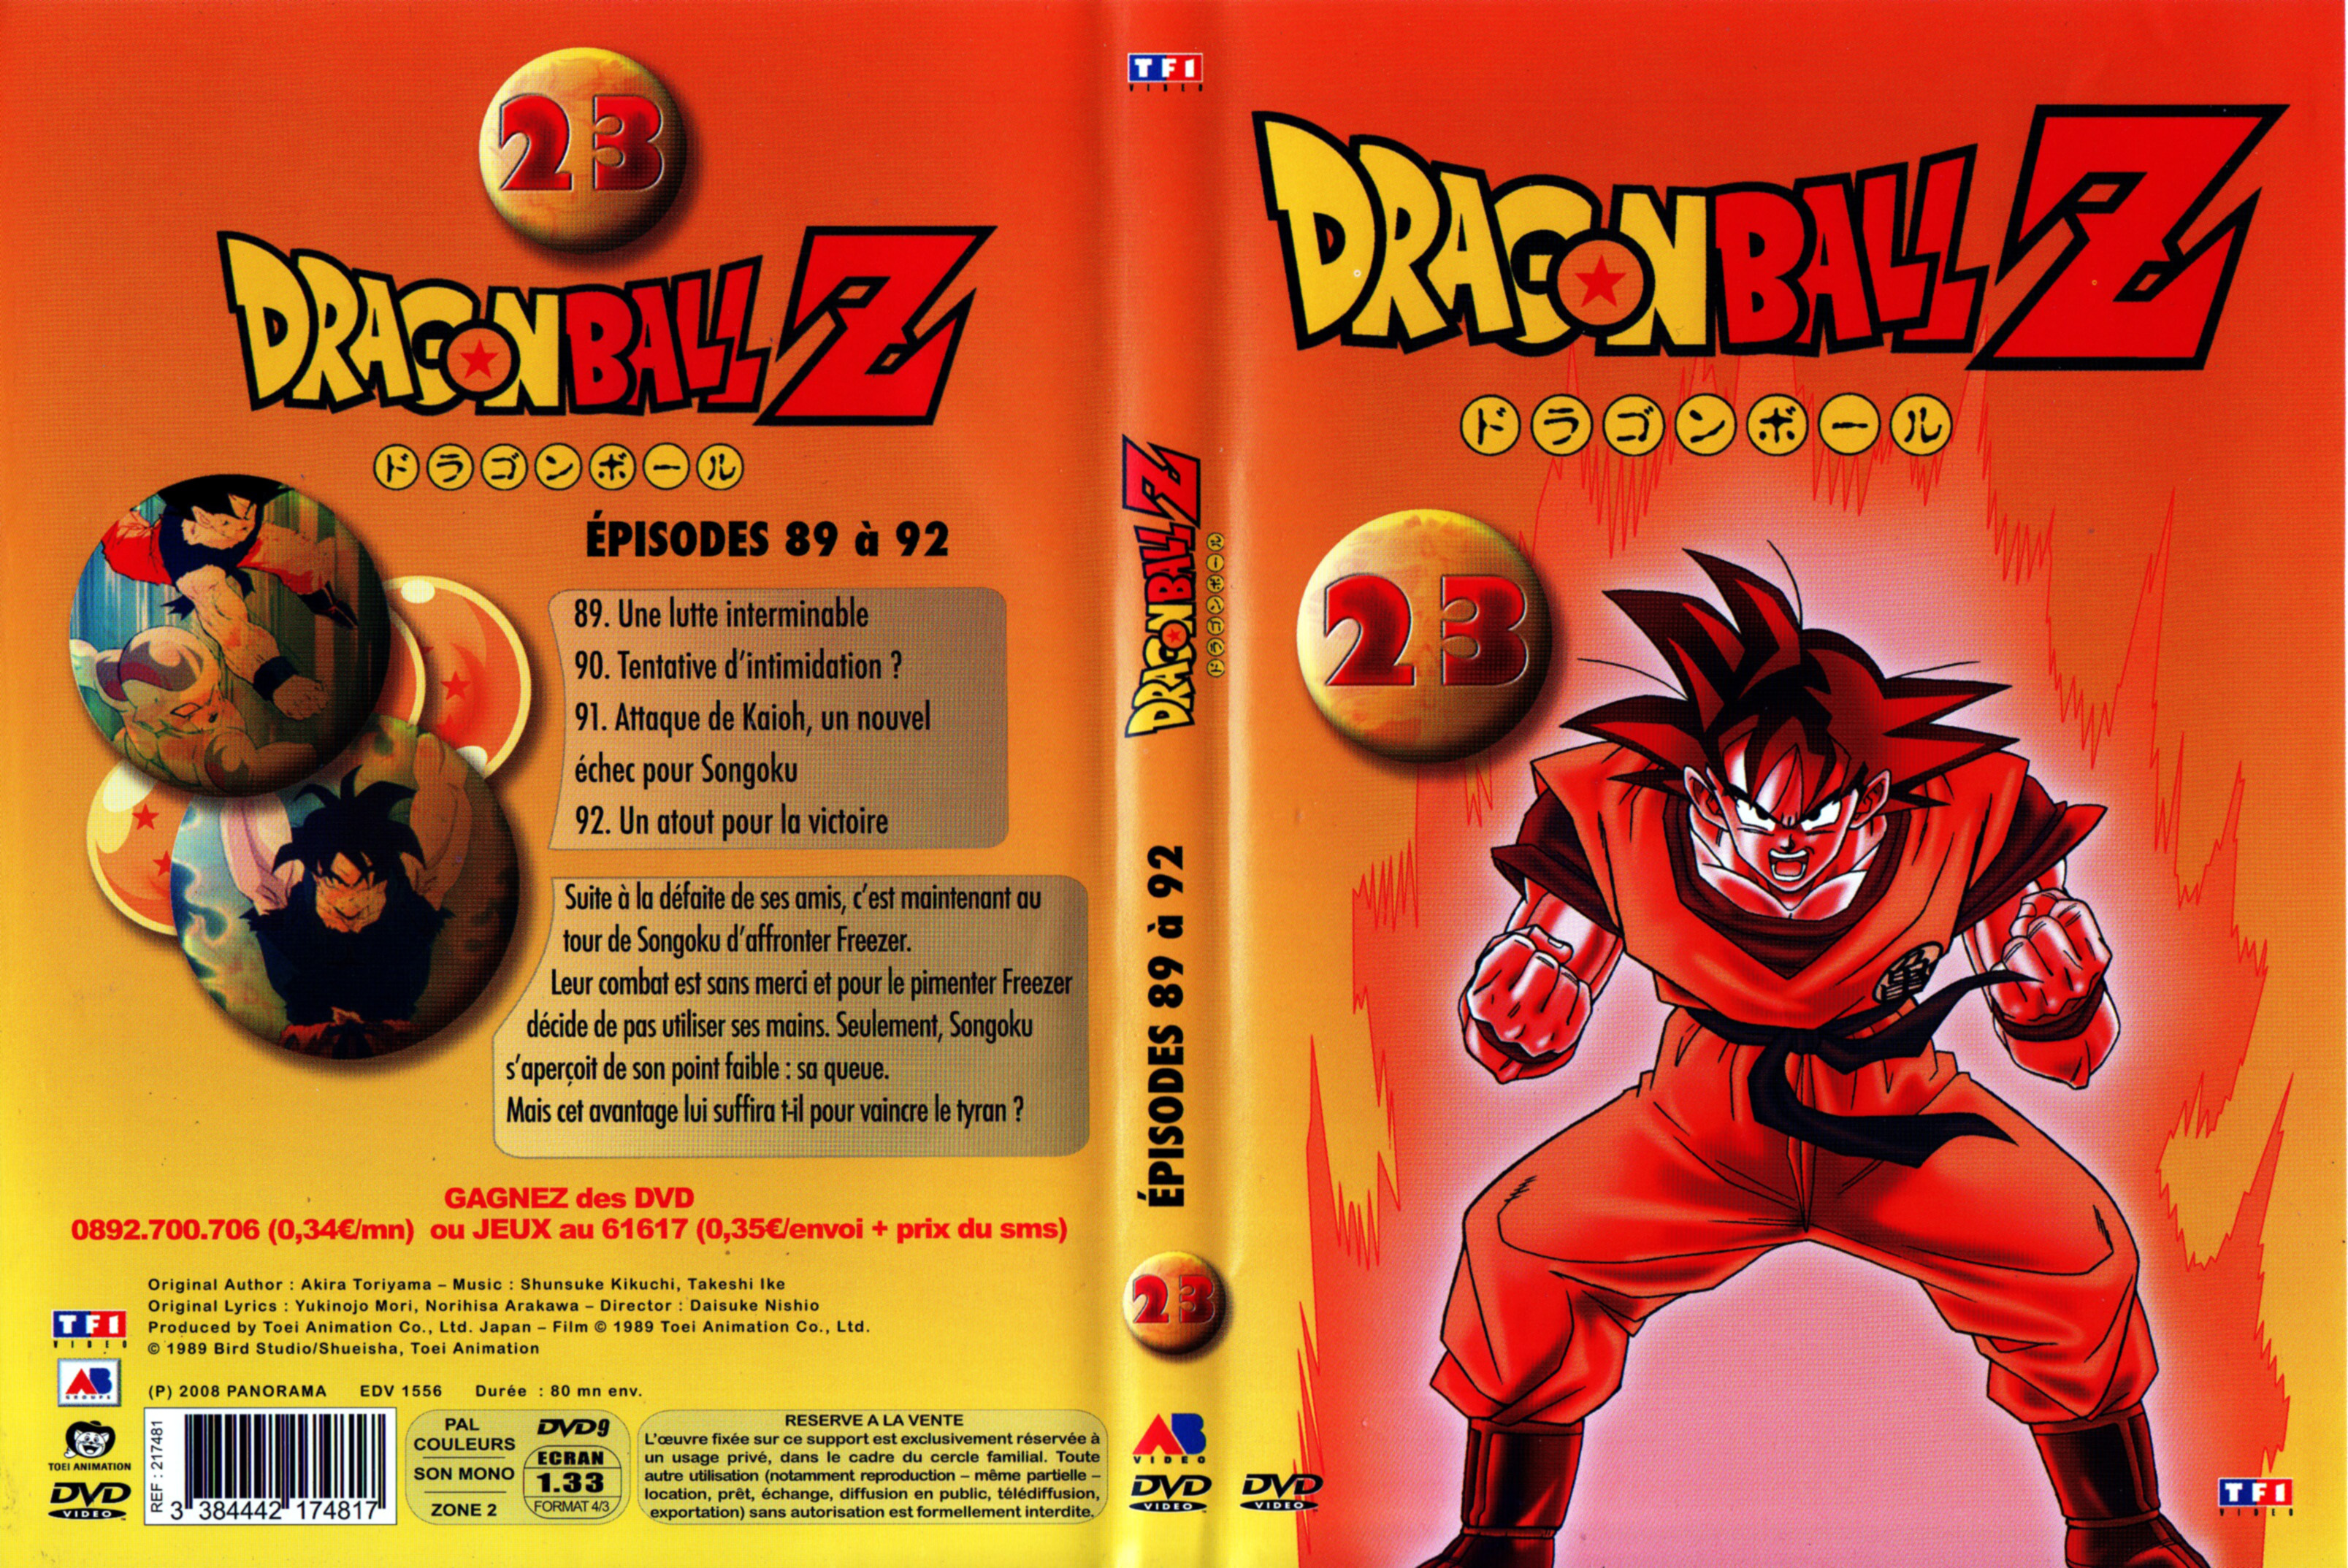 Jaquette DVD Dragon Ball Z vol 23 v2